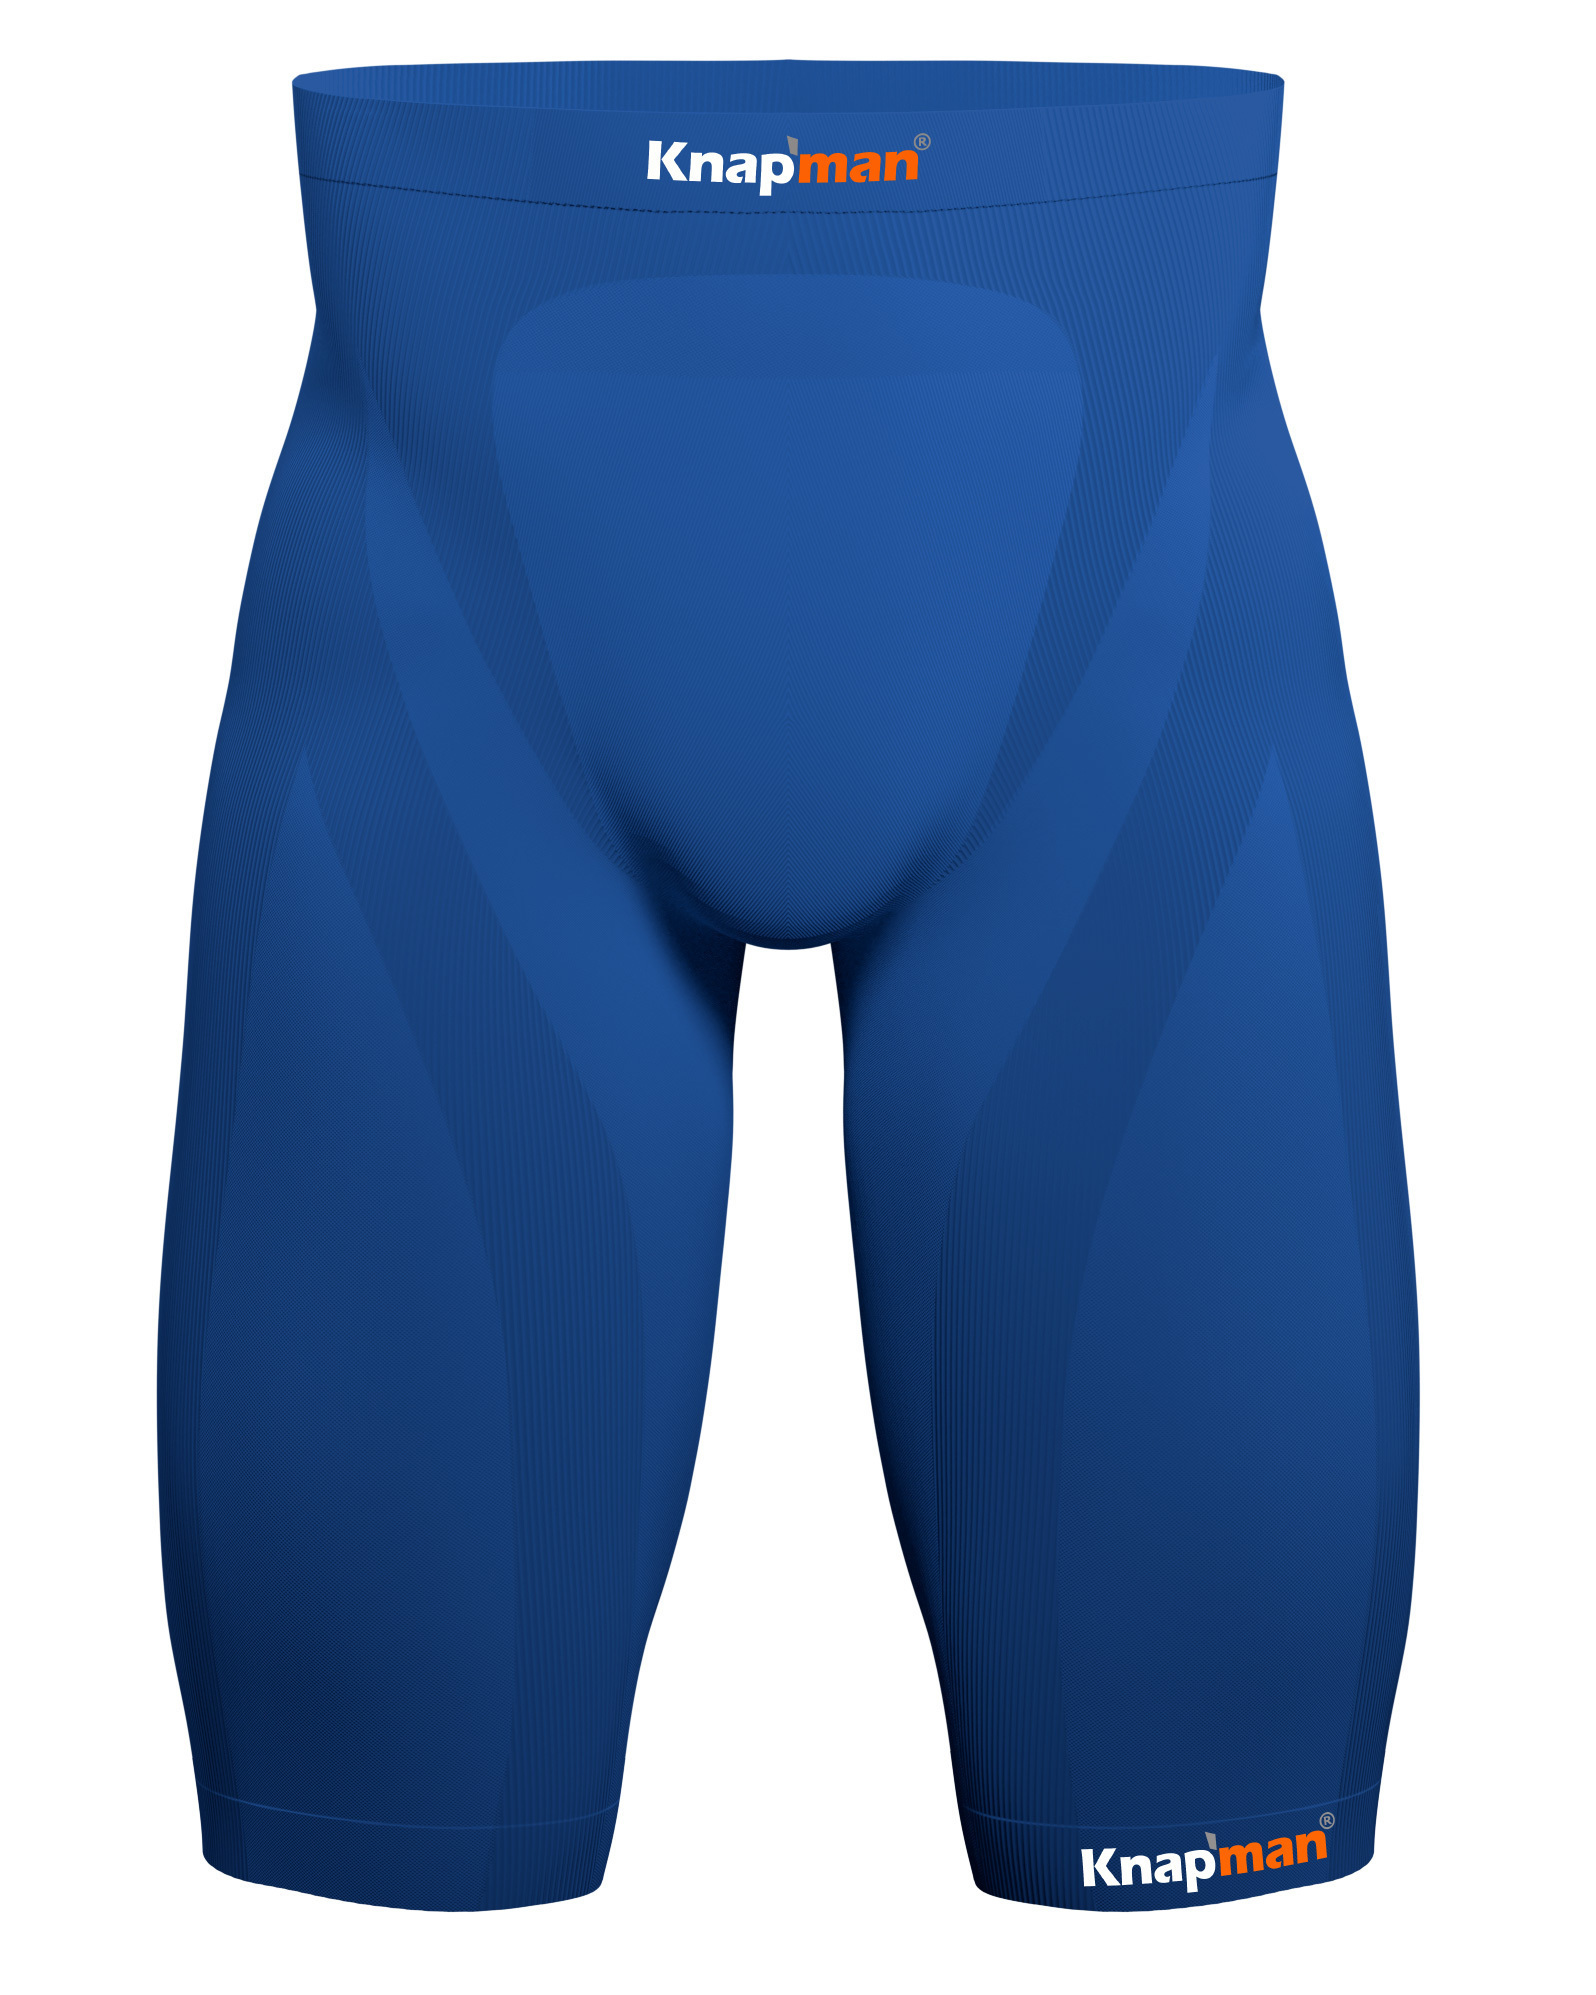 Knap'man Compression Shorts Royal Blue - 45%